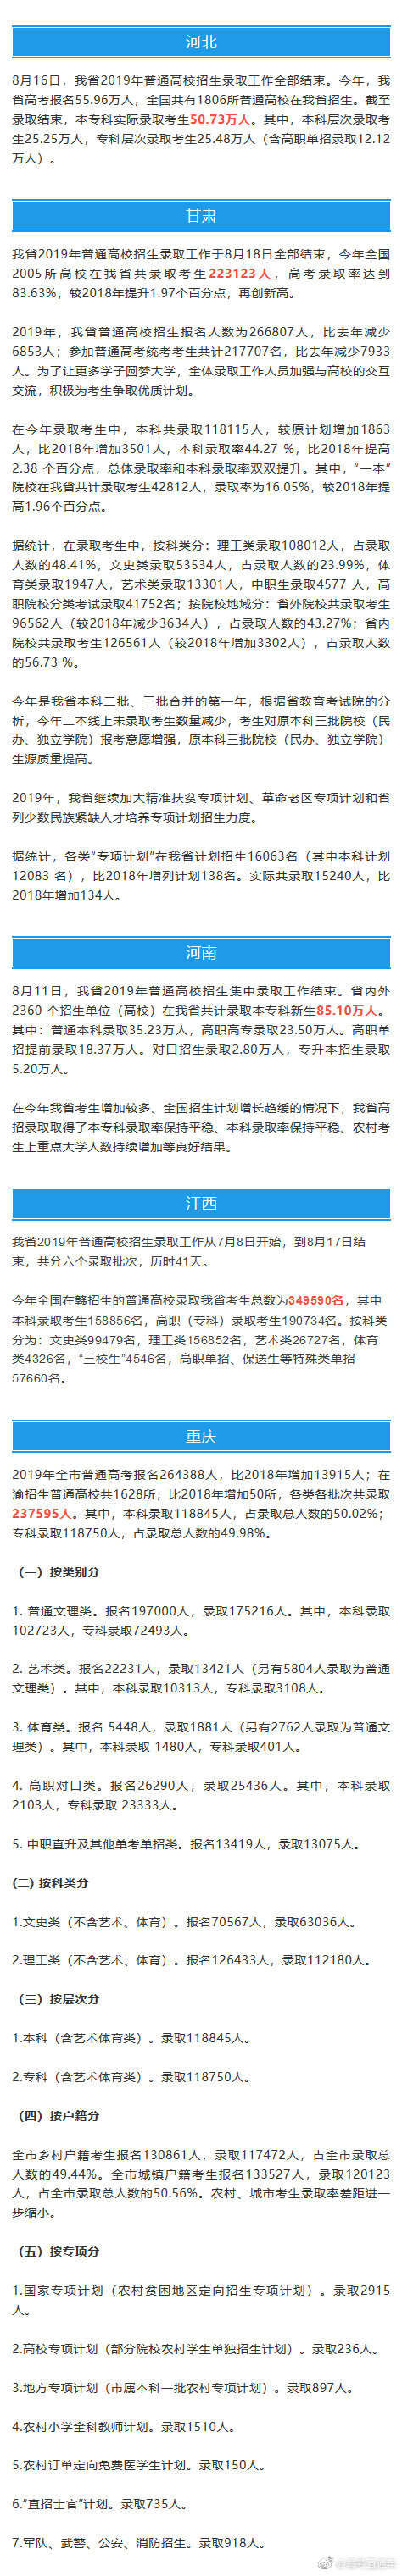 2020青海高考藏文成_青海公布2020高考招录工作细则7月29起填报志愿